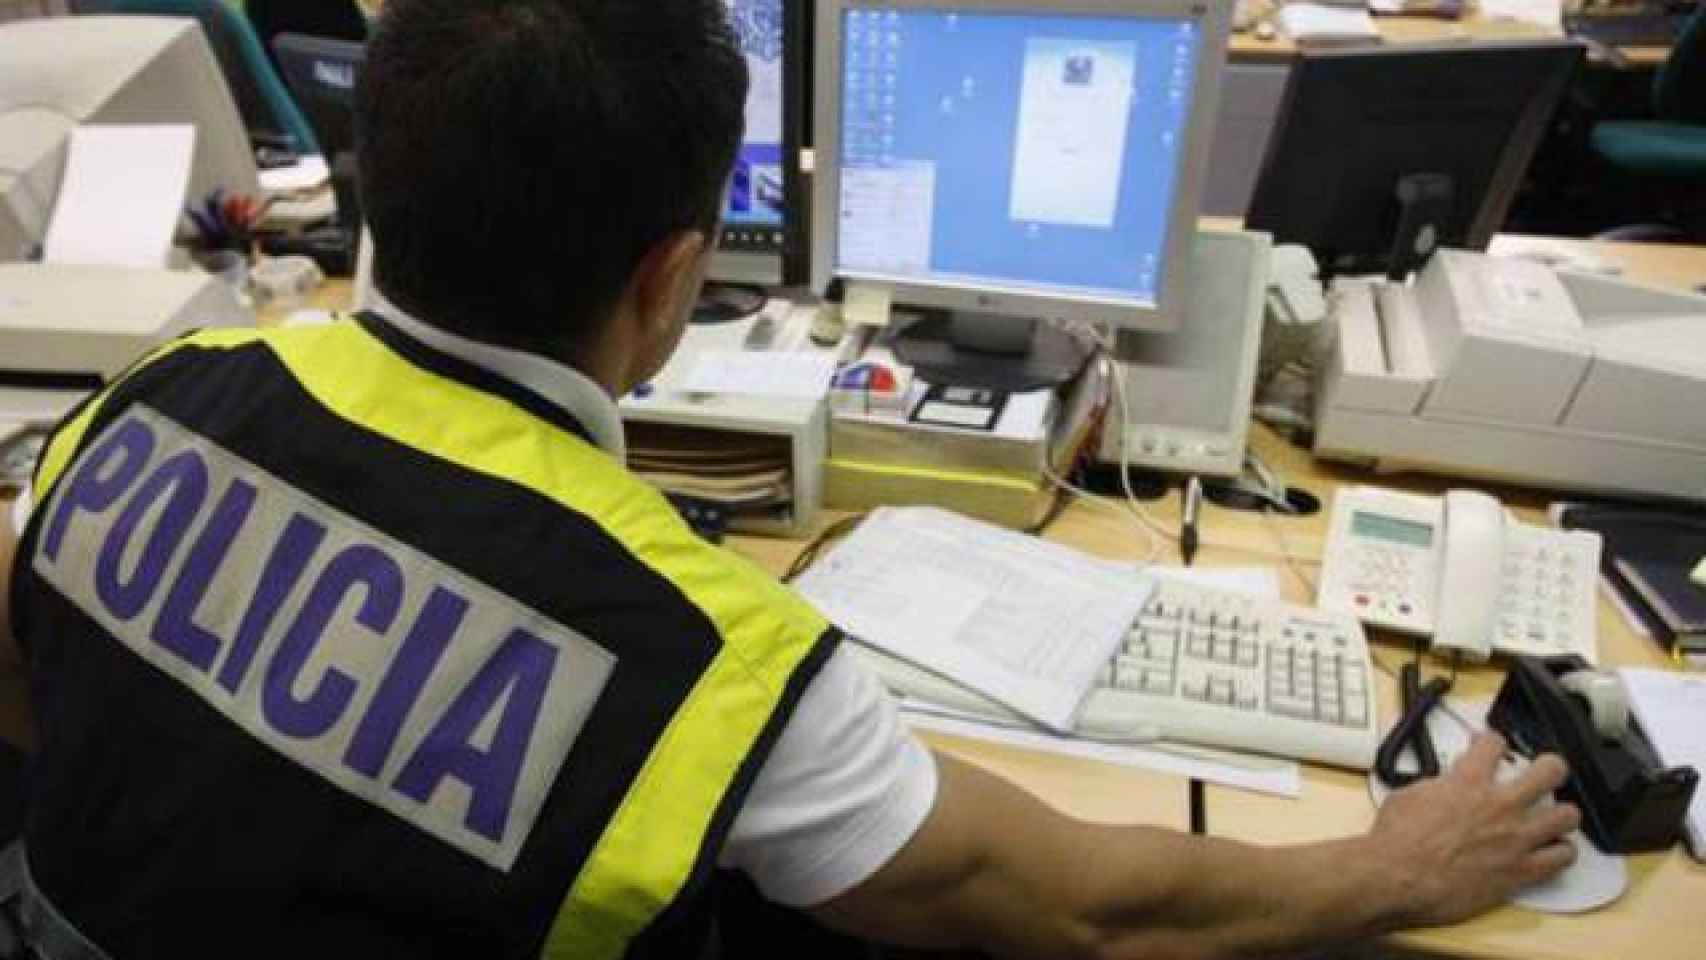 La policía rastreó la pista informática, que les llevó a Tenerife